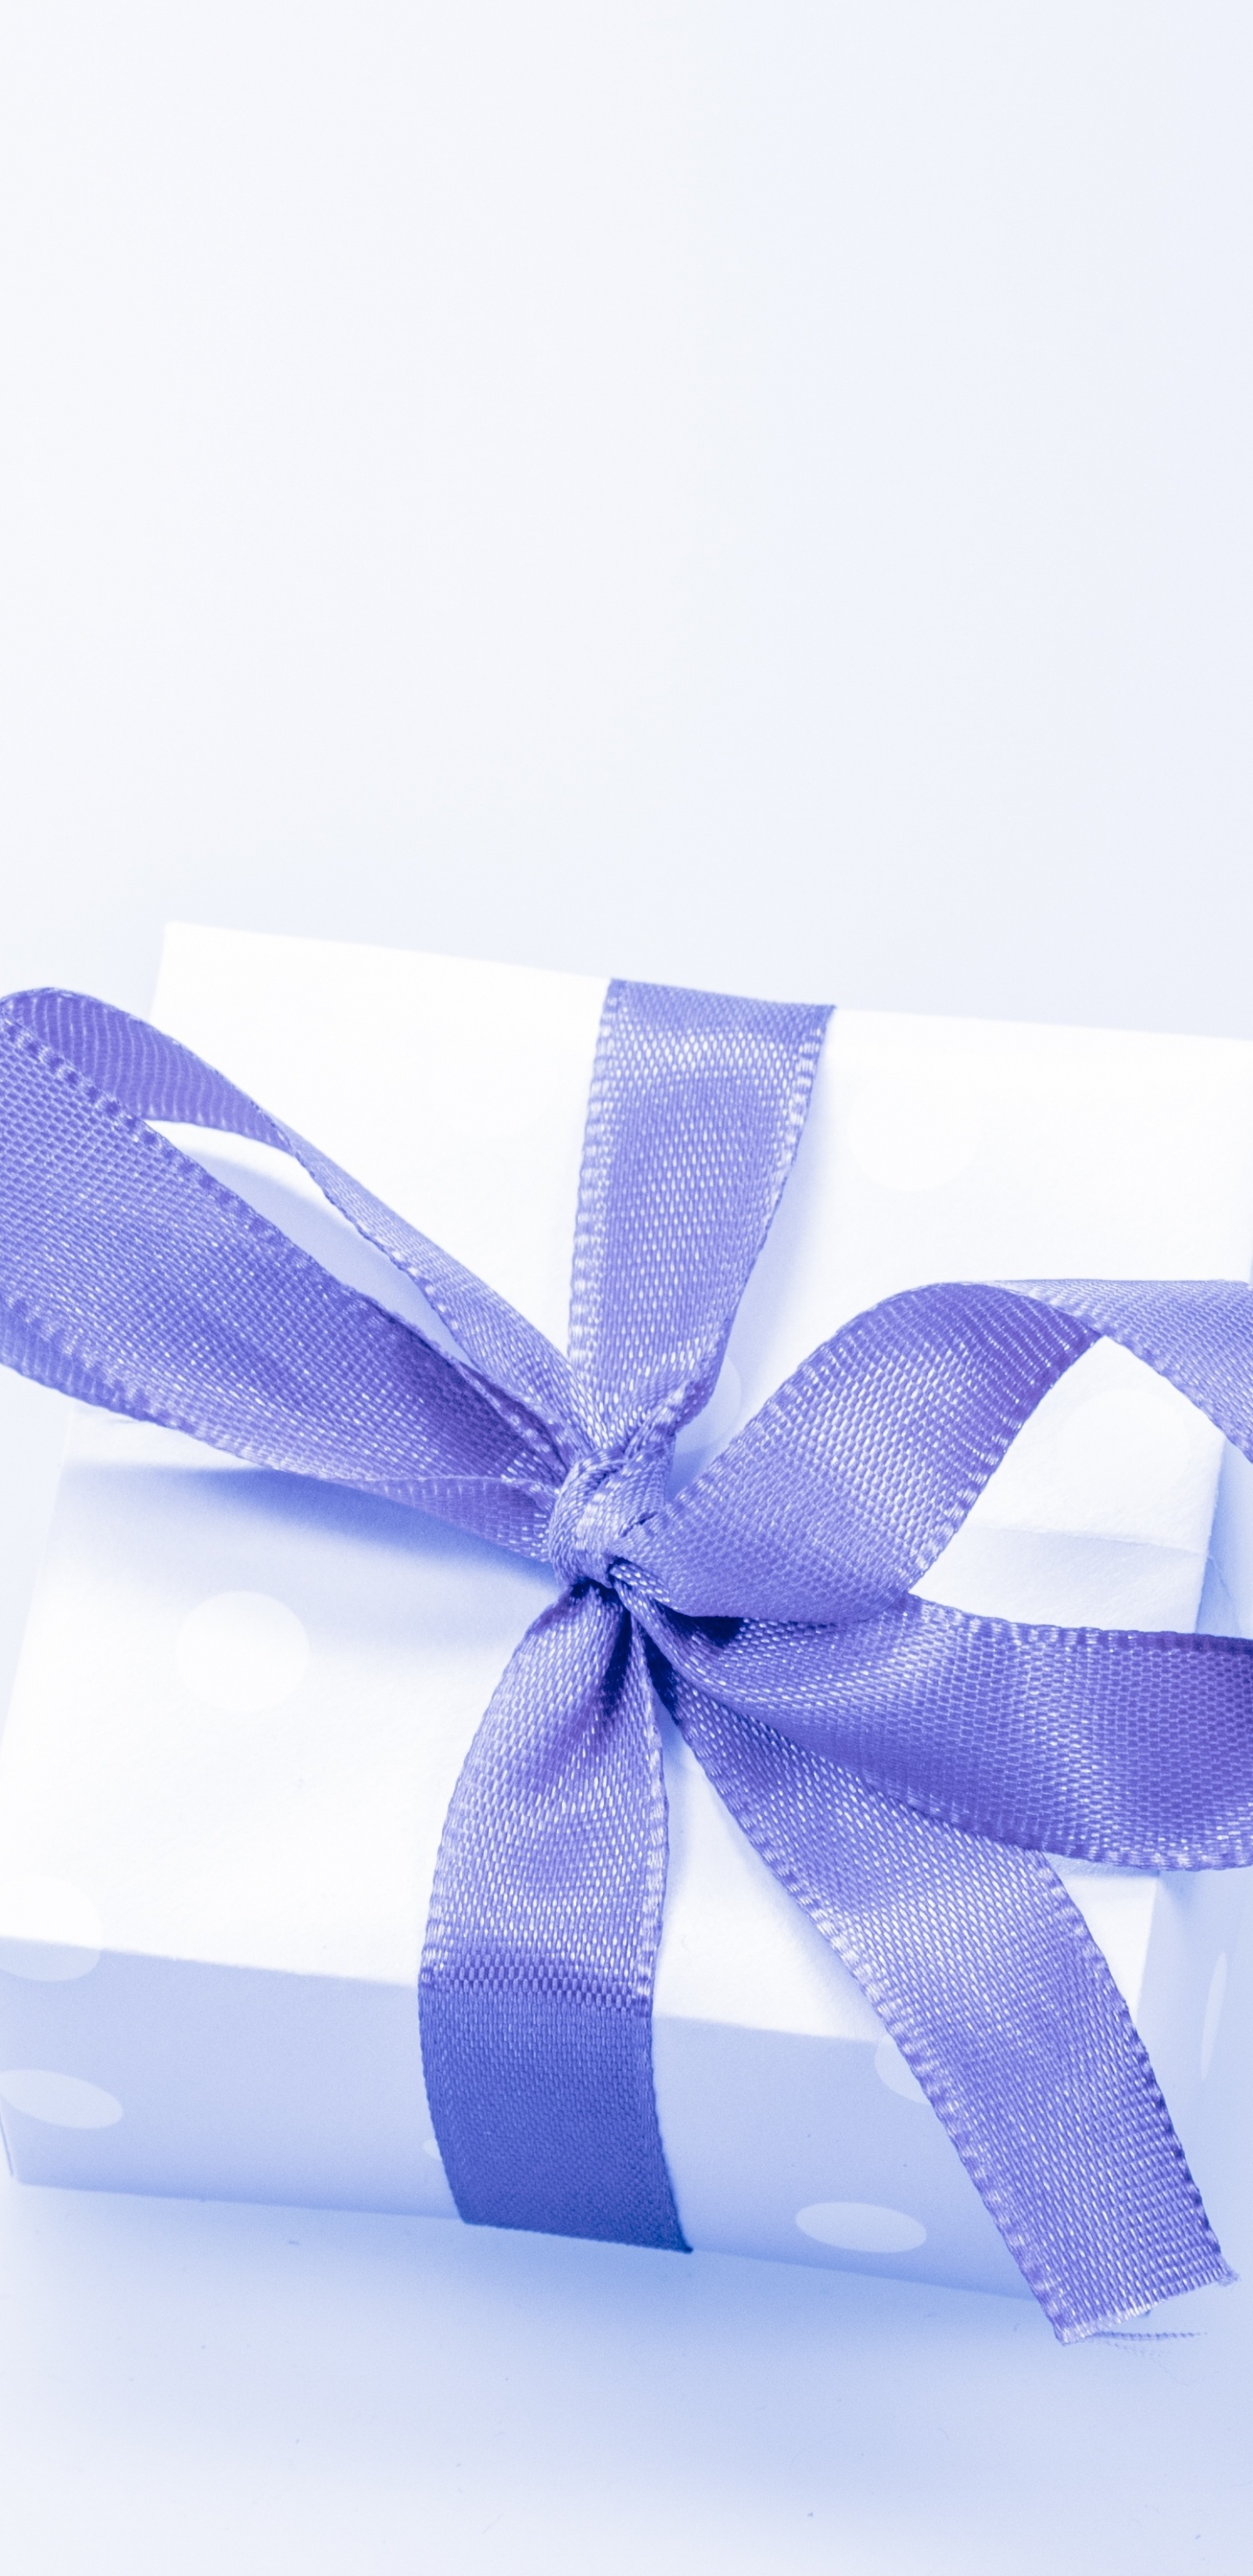 Geschenk, Geschenkkarte, Geschenkpapier, Multifunktionsleiste, Blau. Wallpaper in 1440x2960 Resolution